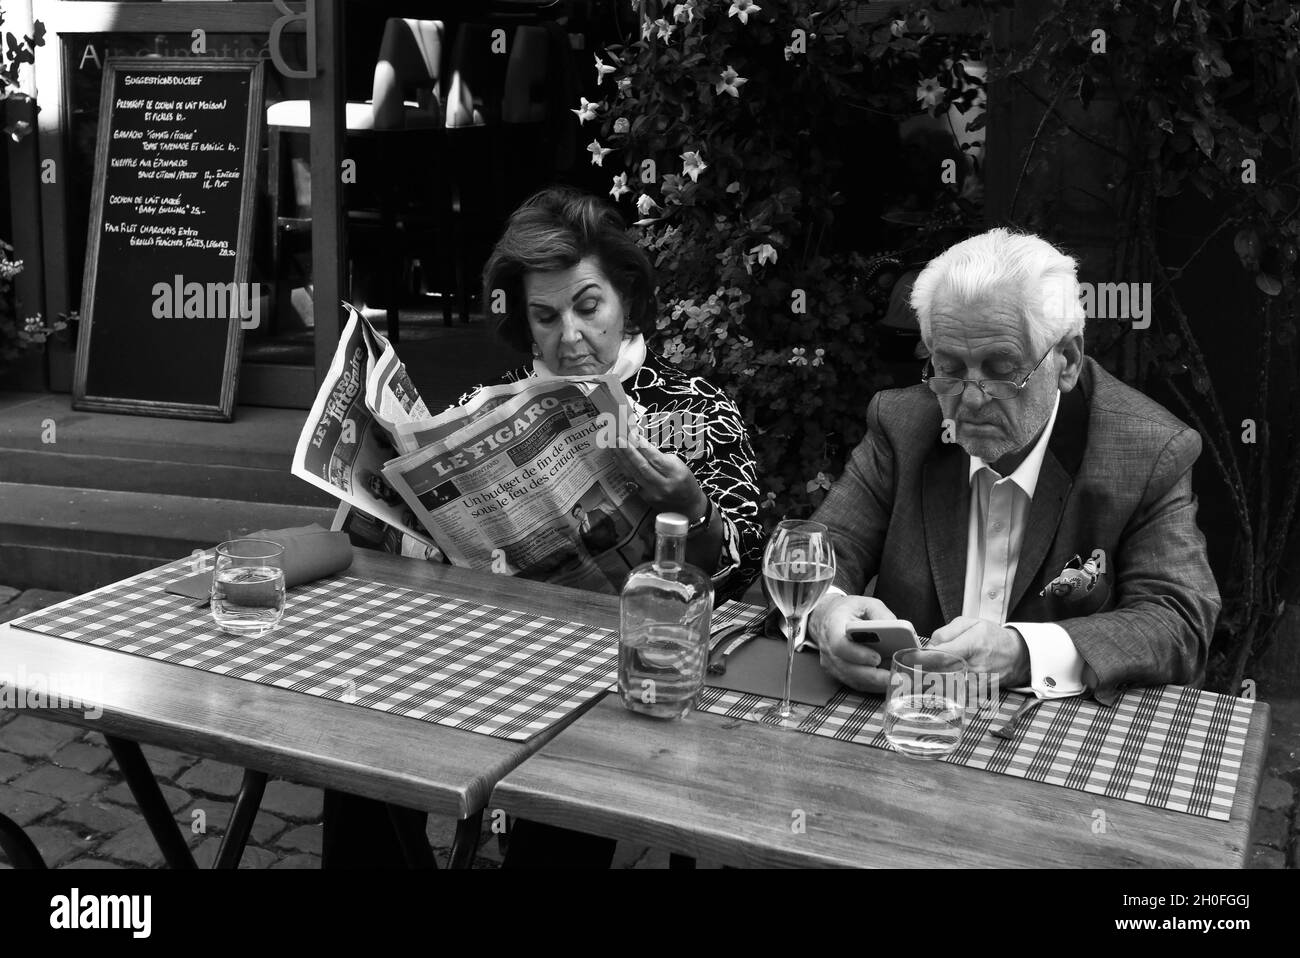 Eine Dame liest eine Zeitung, während der Mann sein Smartphone vor einem Café-Restaurant in Frankreich ansieht Stockfoto